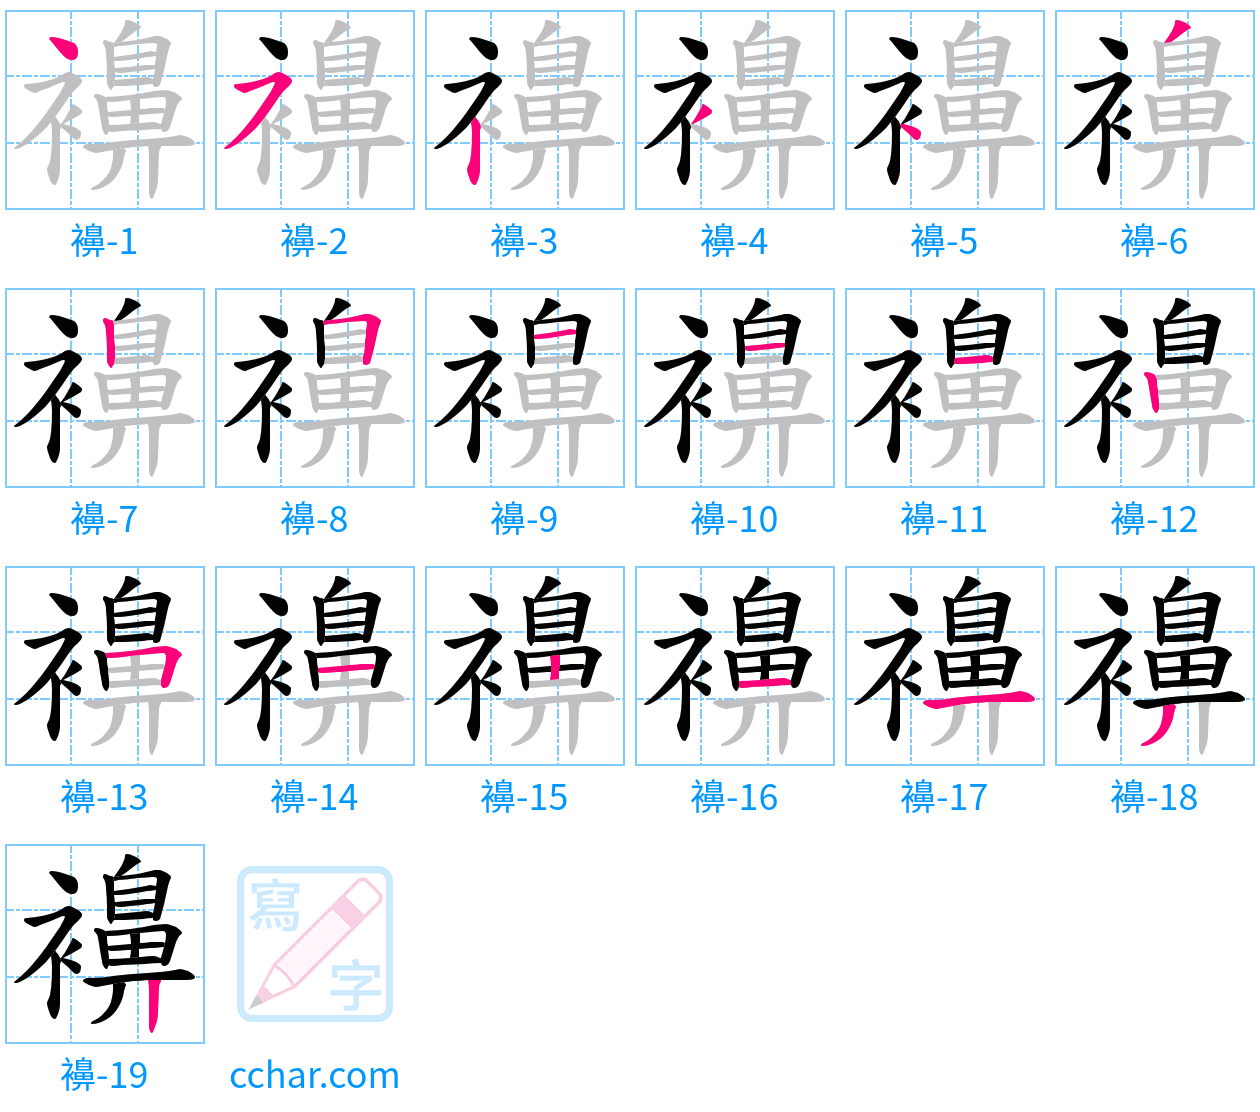 襣 stroke order step-by-step diagram